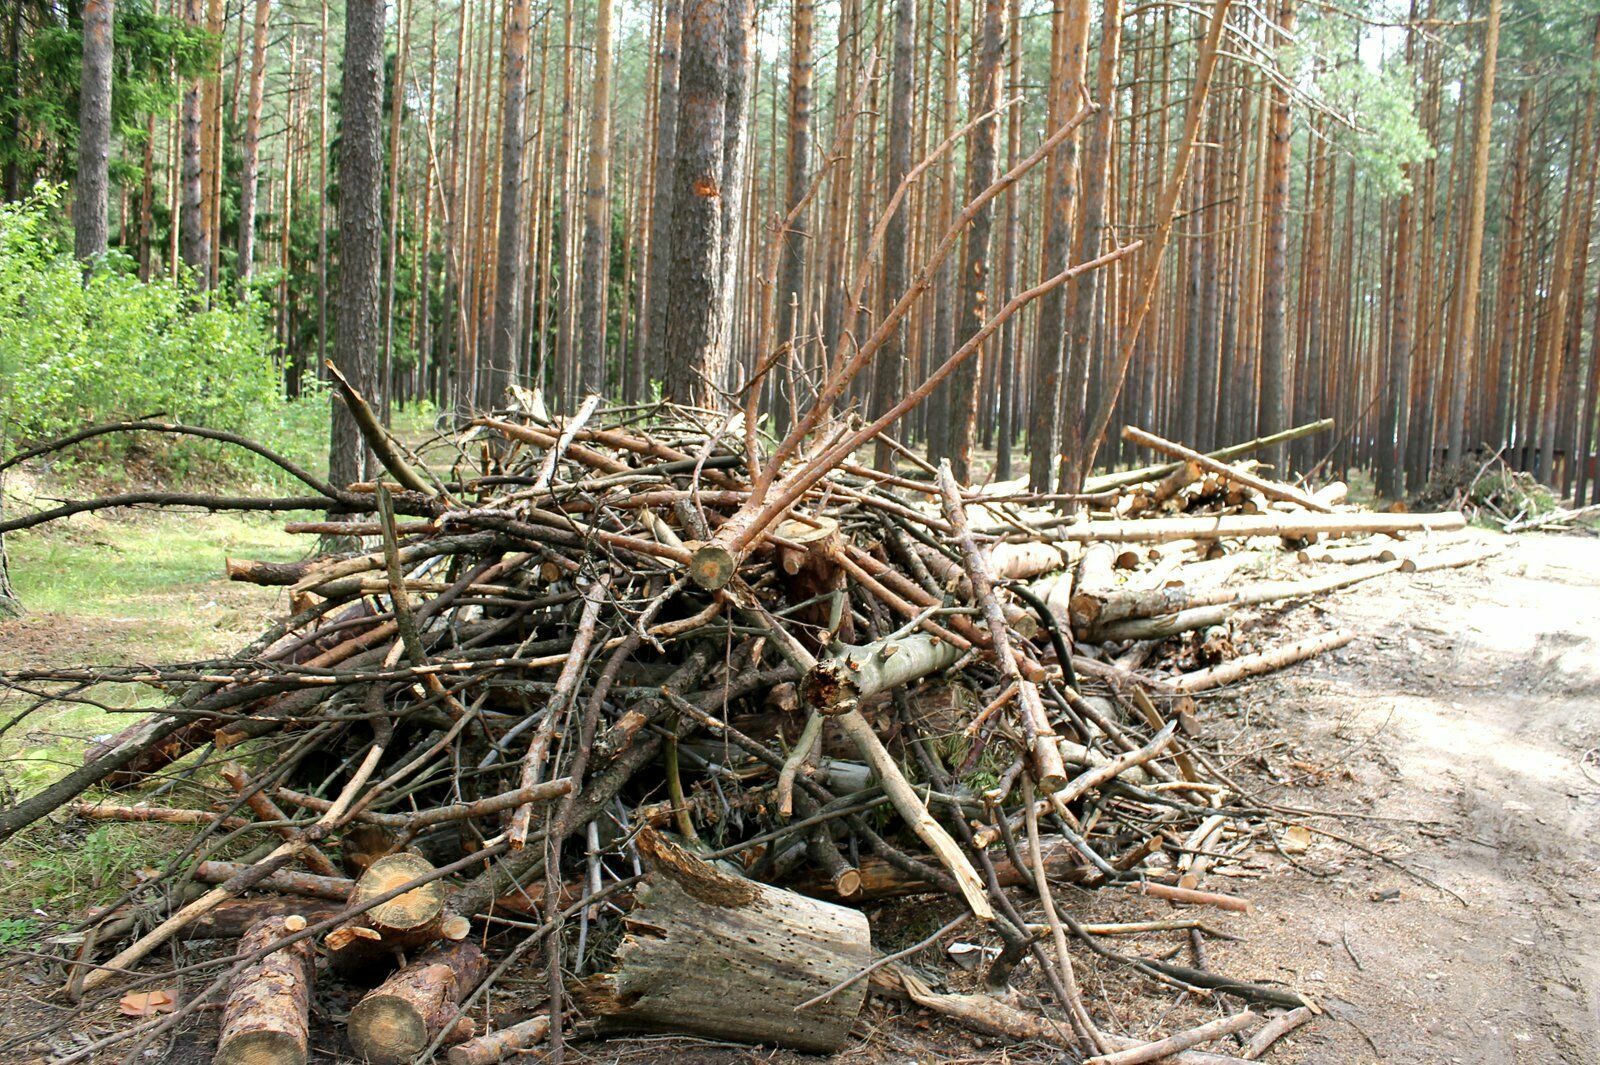 Конец средневековья: в лесах позволят собирать хворост без разрешения